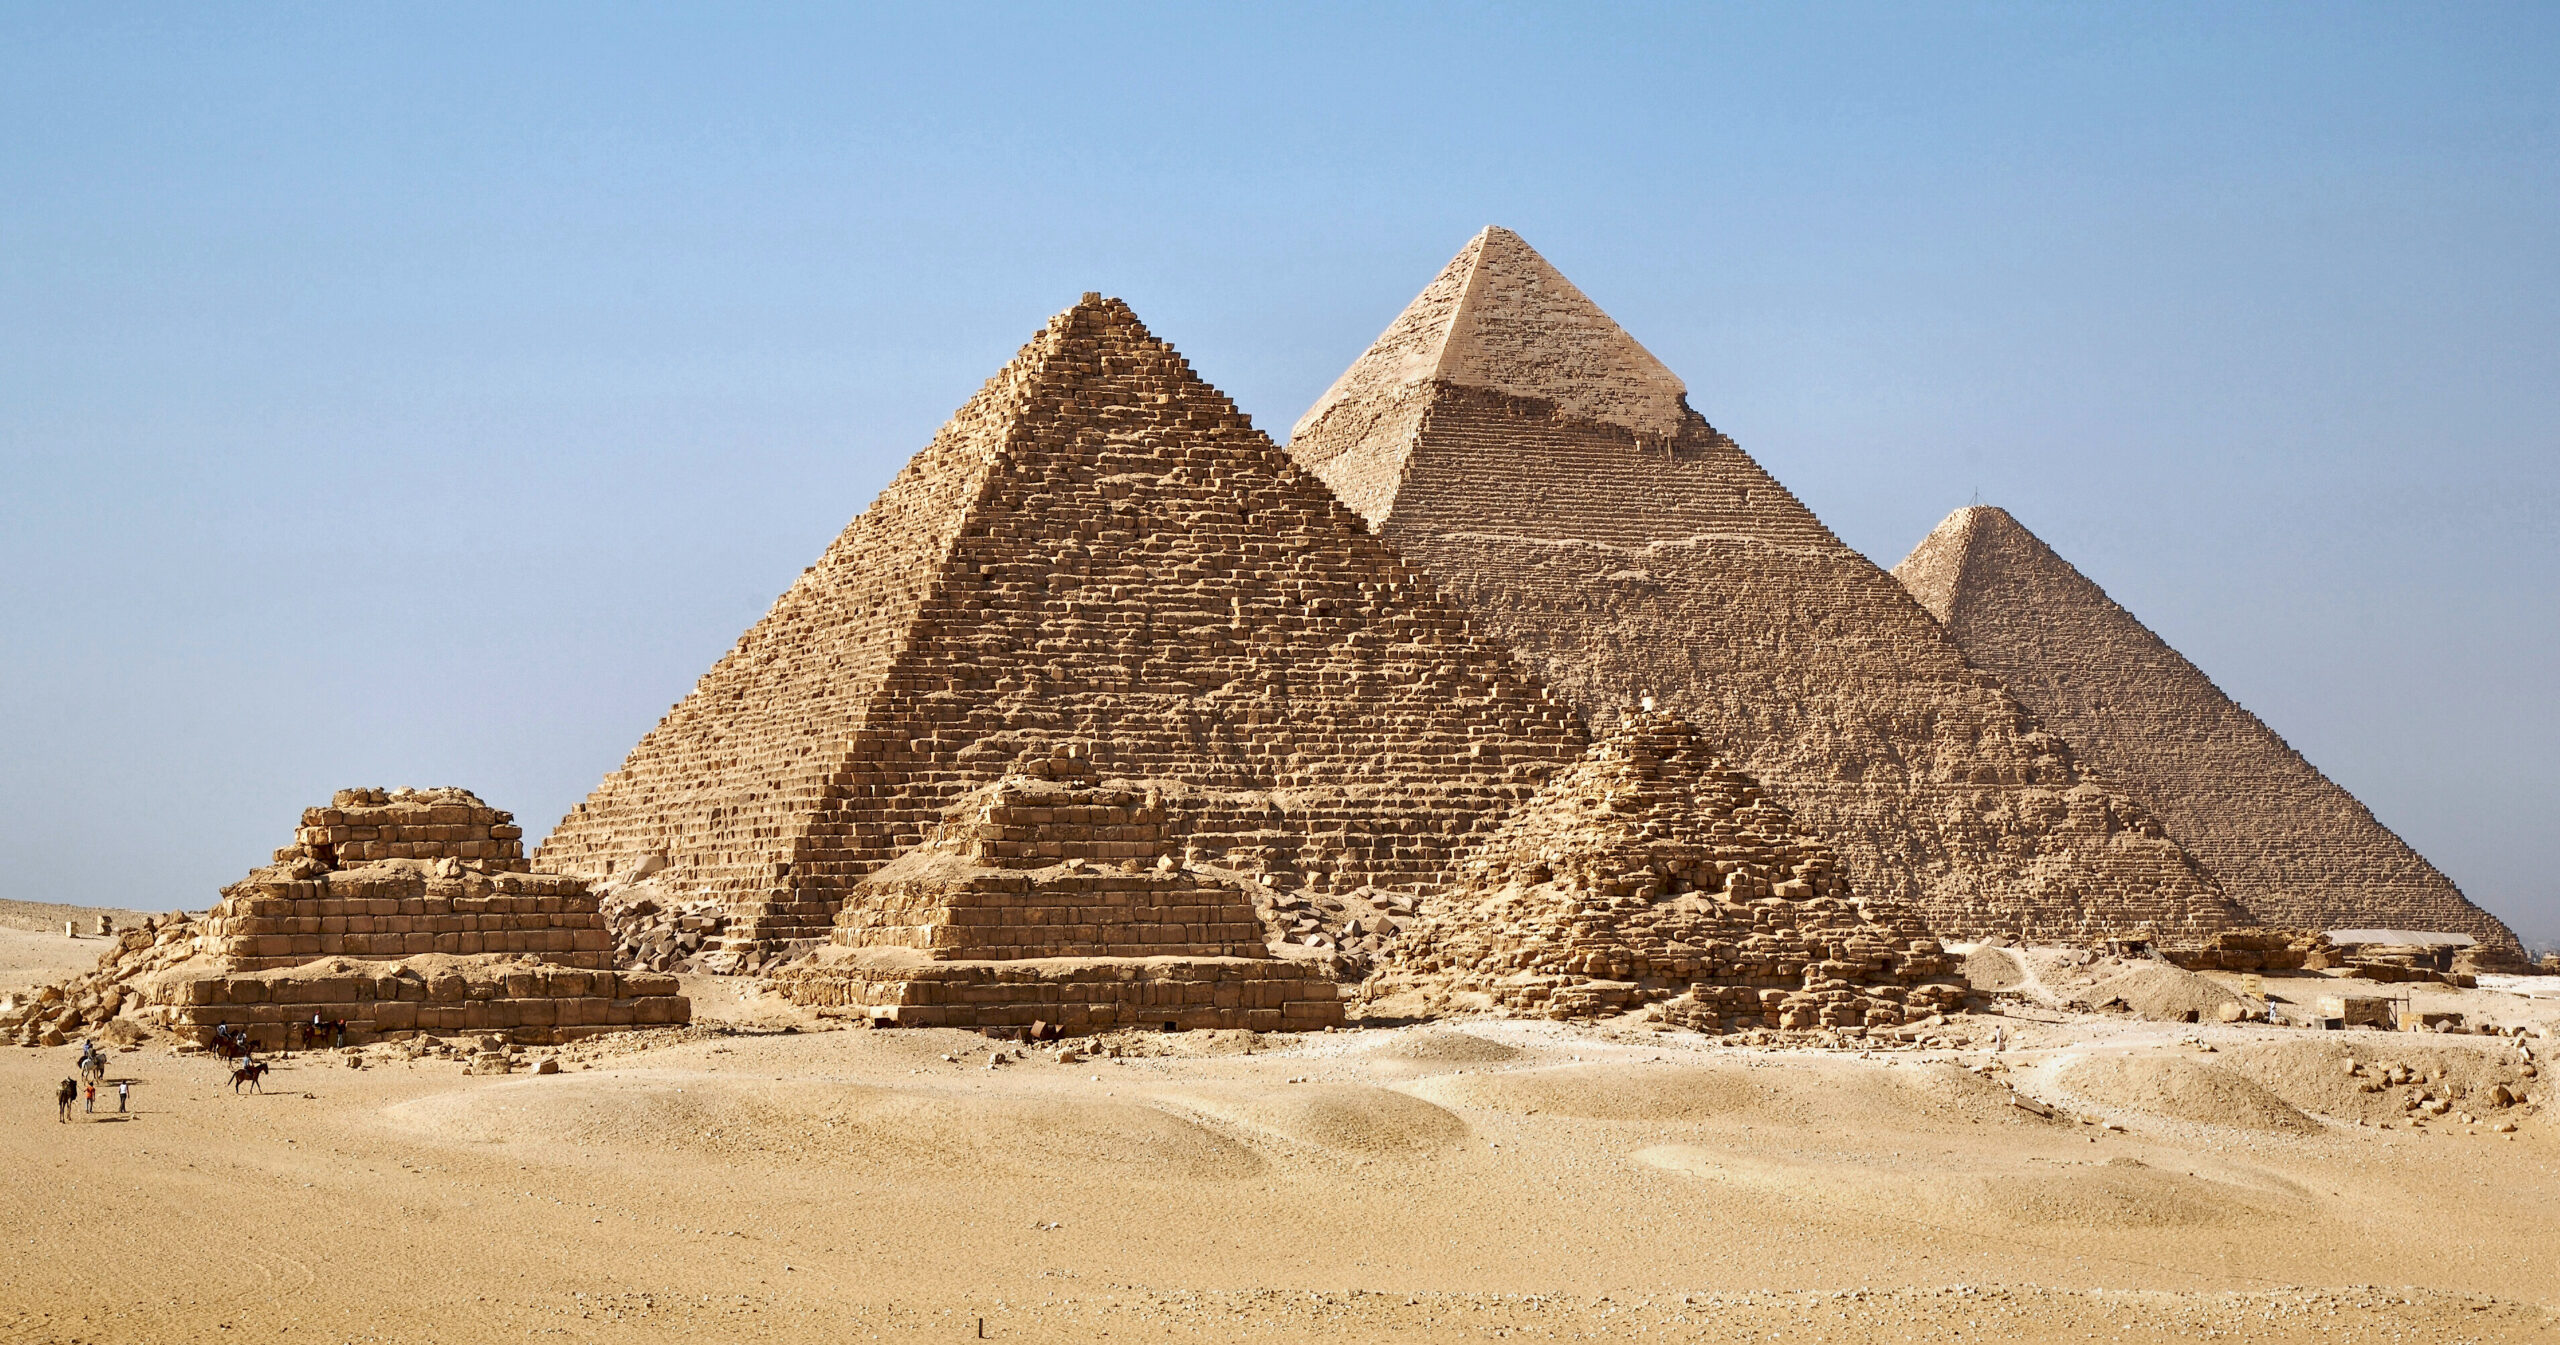 Pirámides de Egipto: Monumentos emblemáticos de la antigüedad.